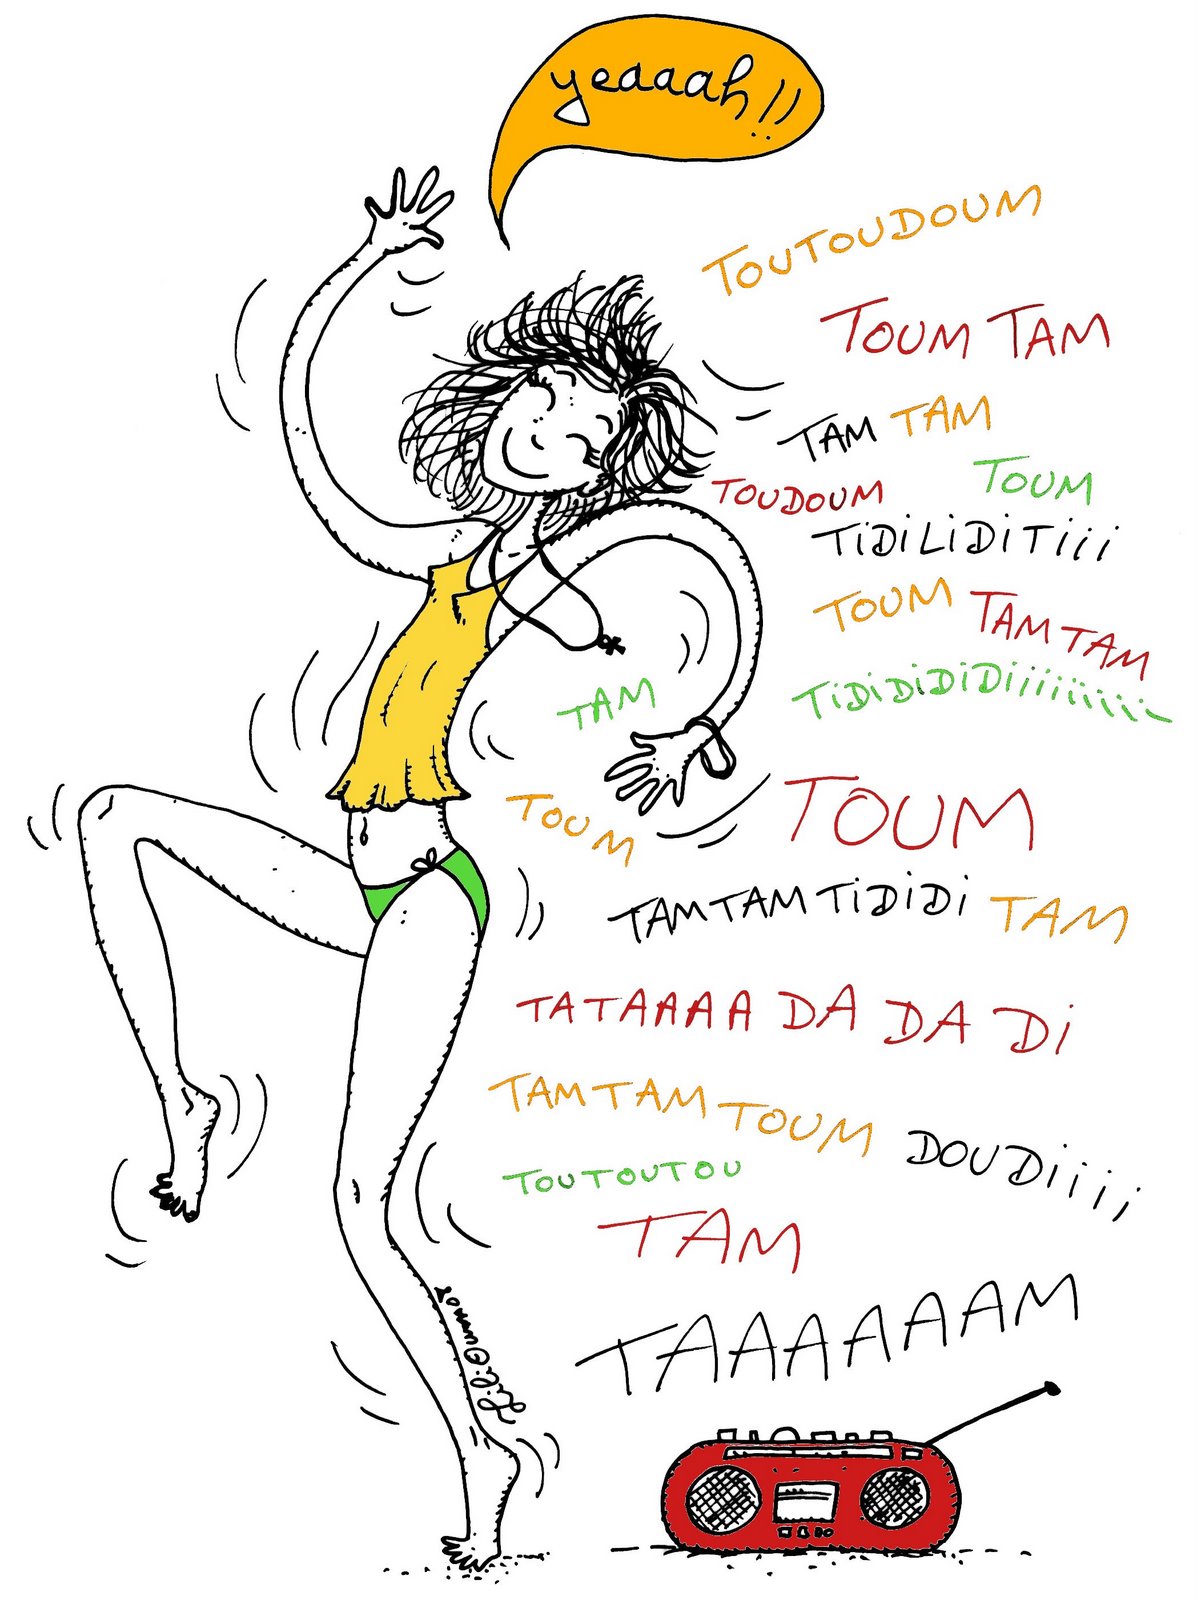 [Tamtam+dance.jpg]